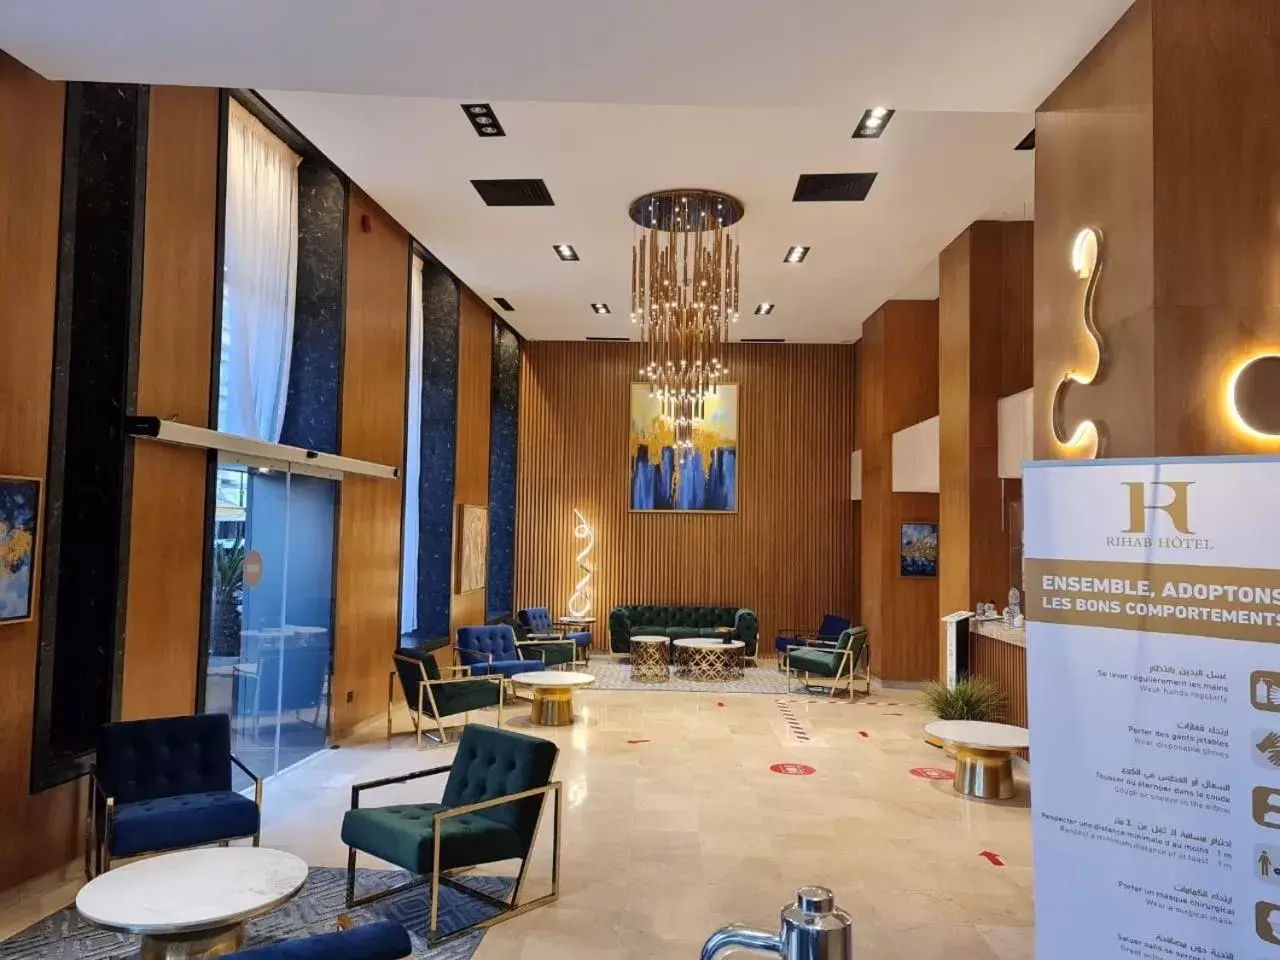 Lobby or reception, Lobby/Reception in Rihab Hotel